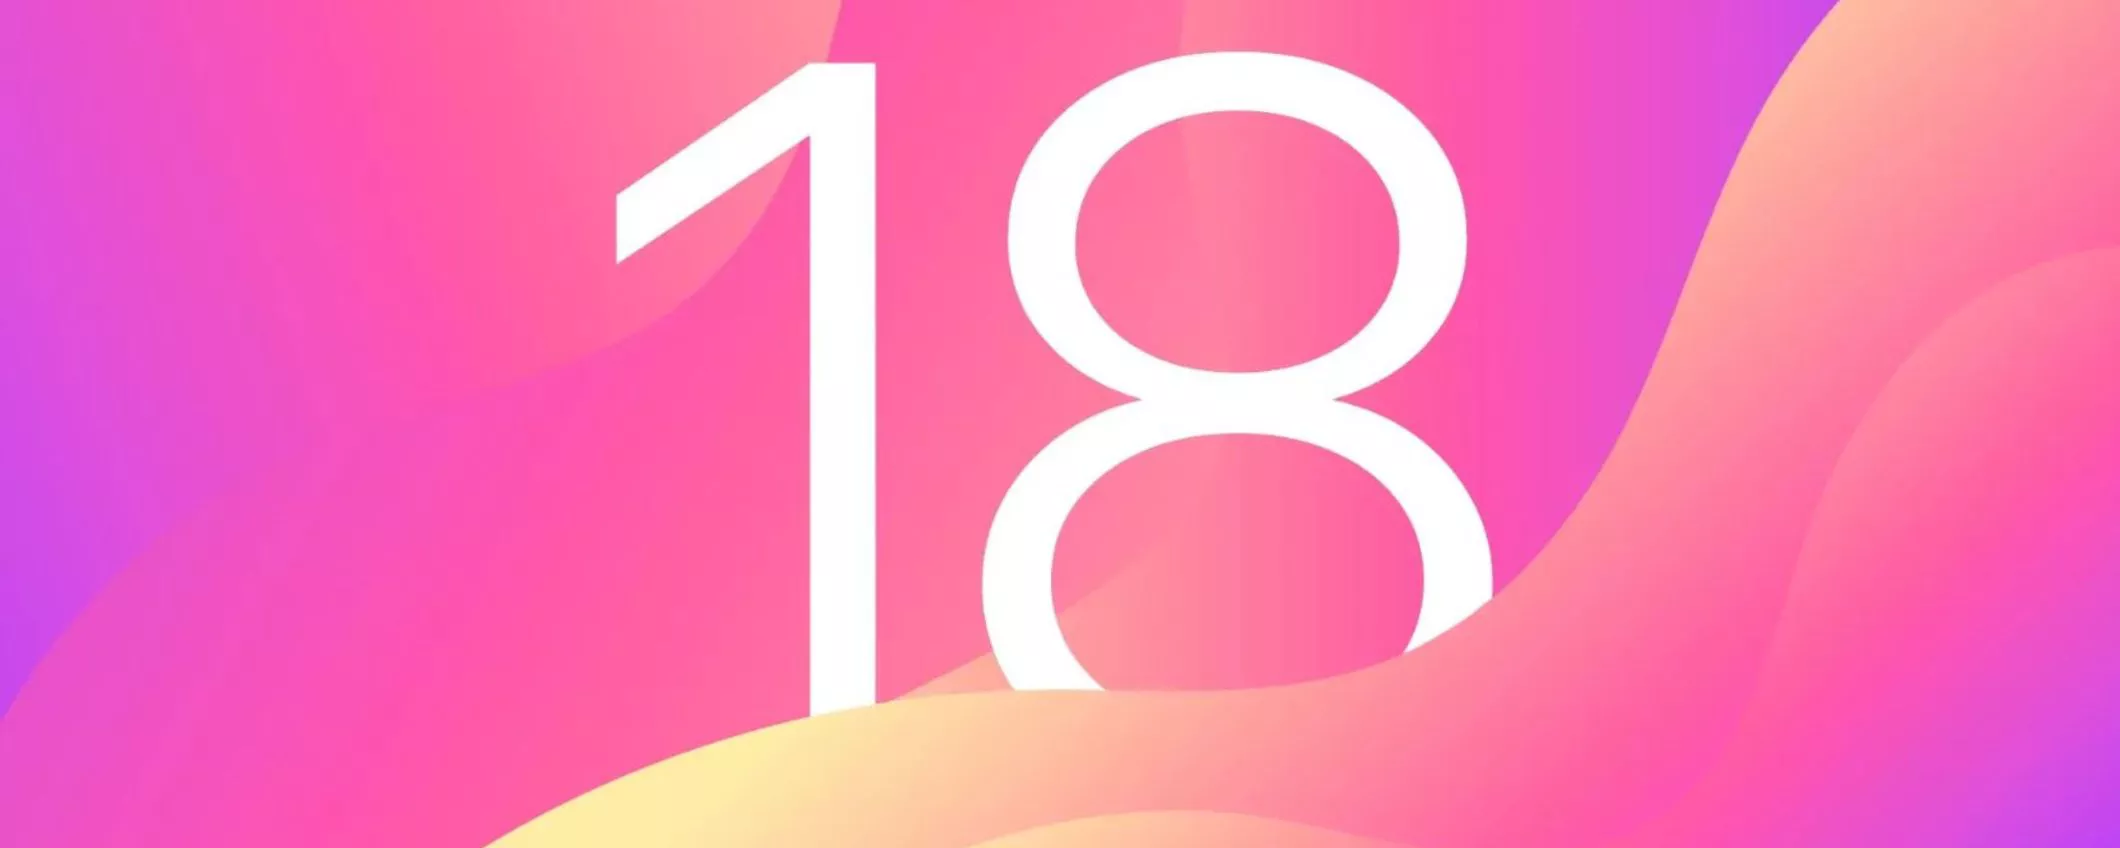 iOS 18: icone e emoji personalizzate grazie all'intelligenza artificiale